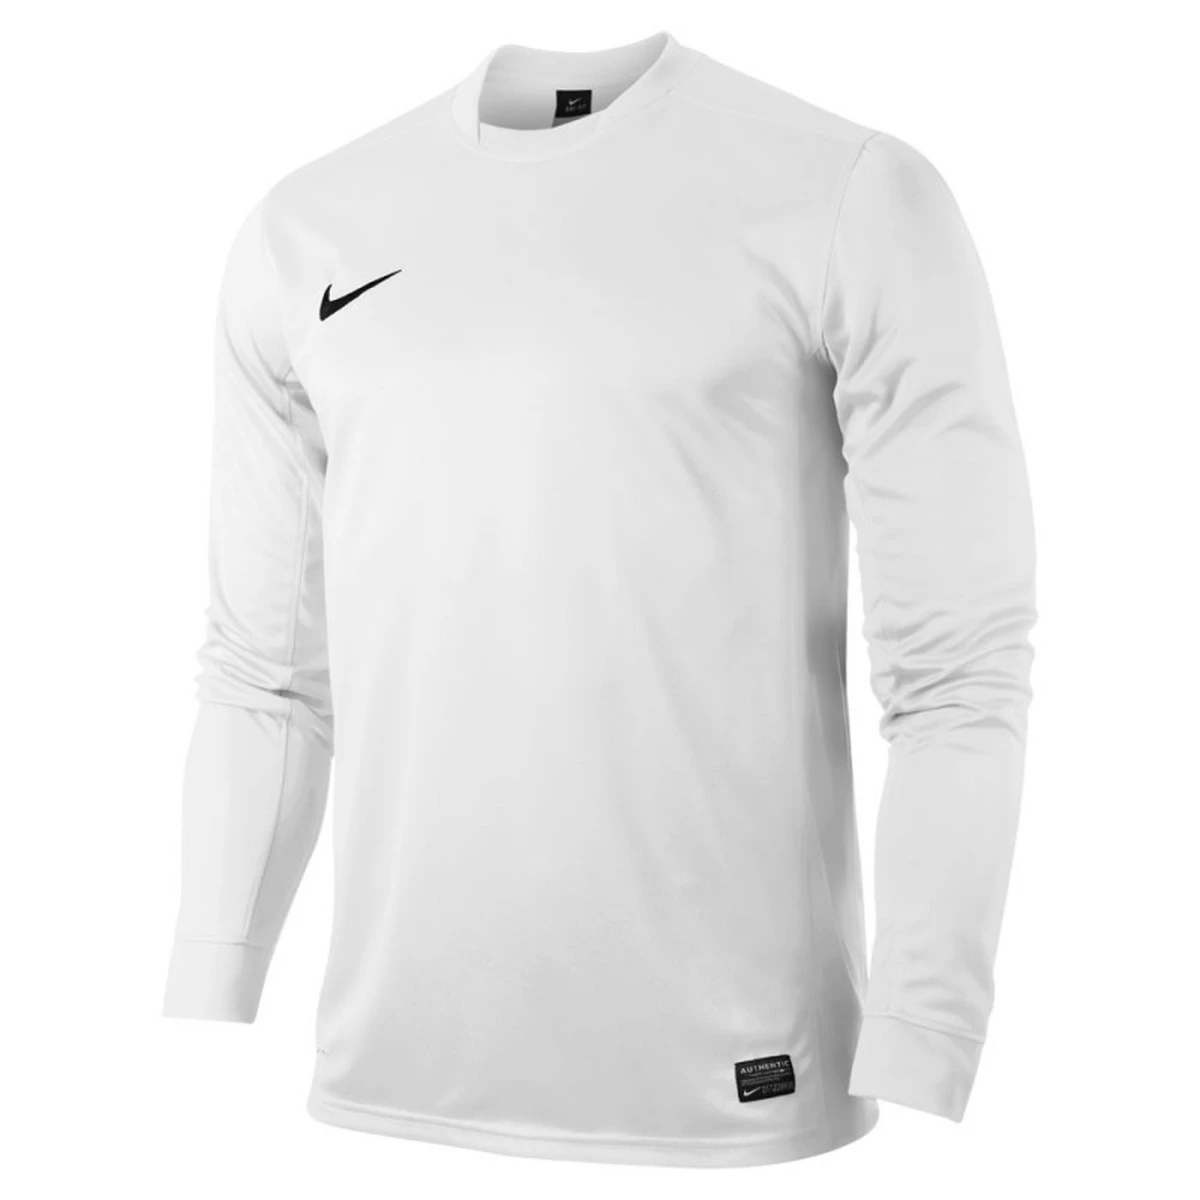 Echt Tegen Effectiviteit Nike SHIRT VOETBAL KM - Korte Mouwen - Shirts - Trainingskleding - Voetbal  - Intersport van den Broek / Biggelaar